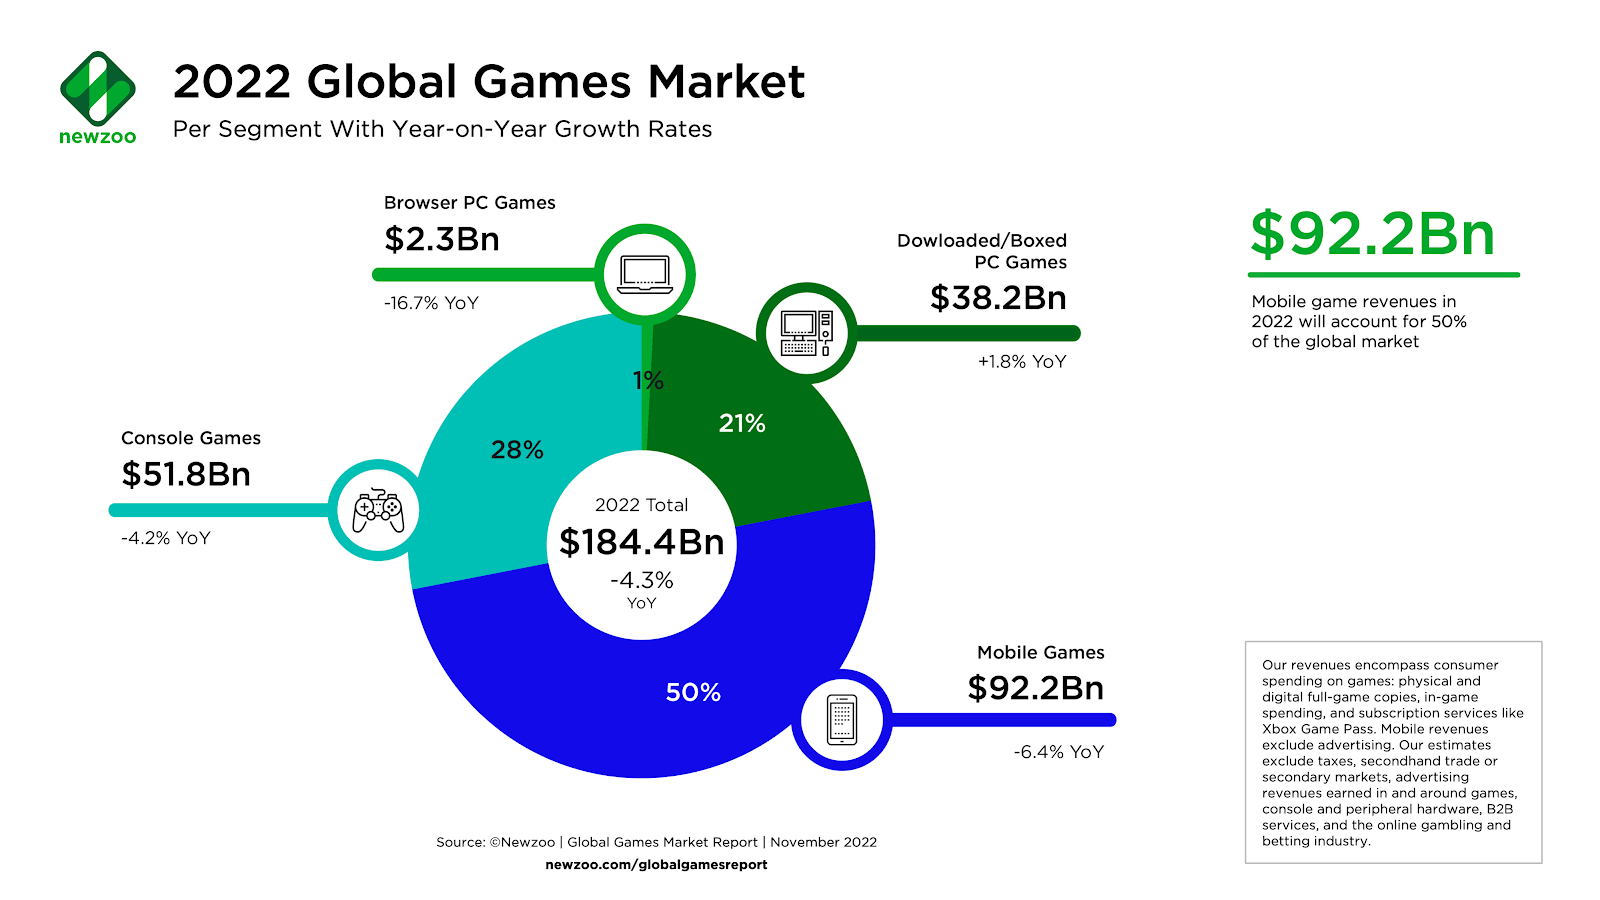 Newzoo_Global-Games-Market-2022-per-Segment_Nov-2022